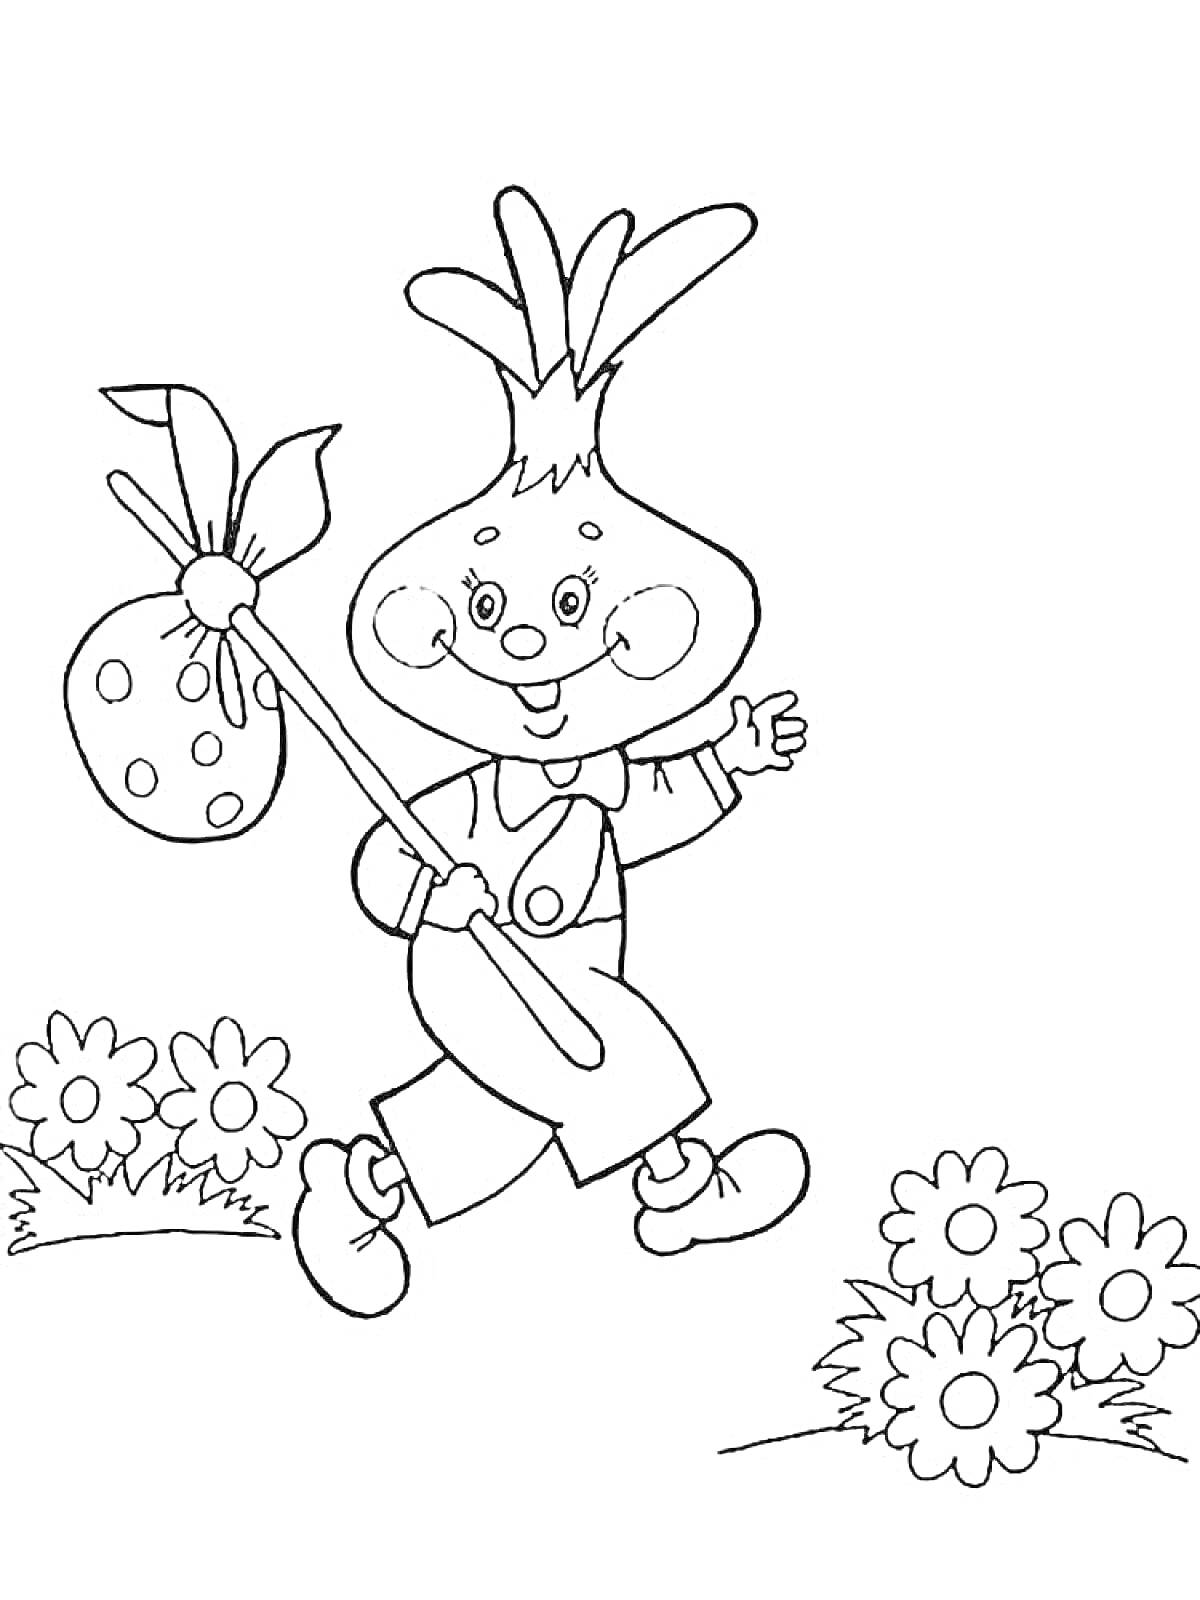 Раскраска Сказочный герой в виде овоща идет с багажом через цветущие клумбы